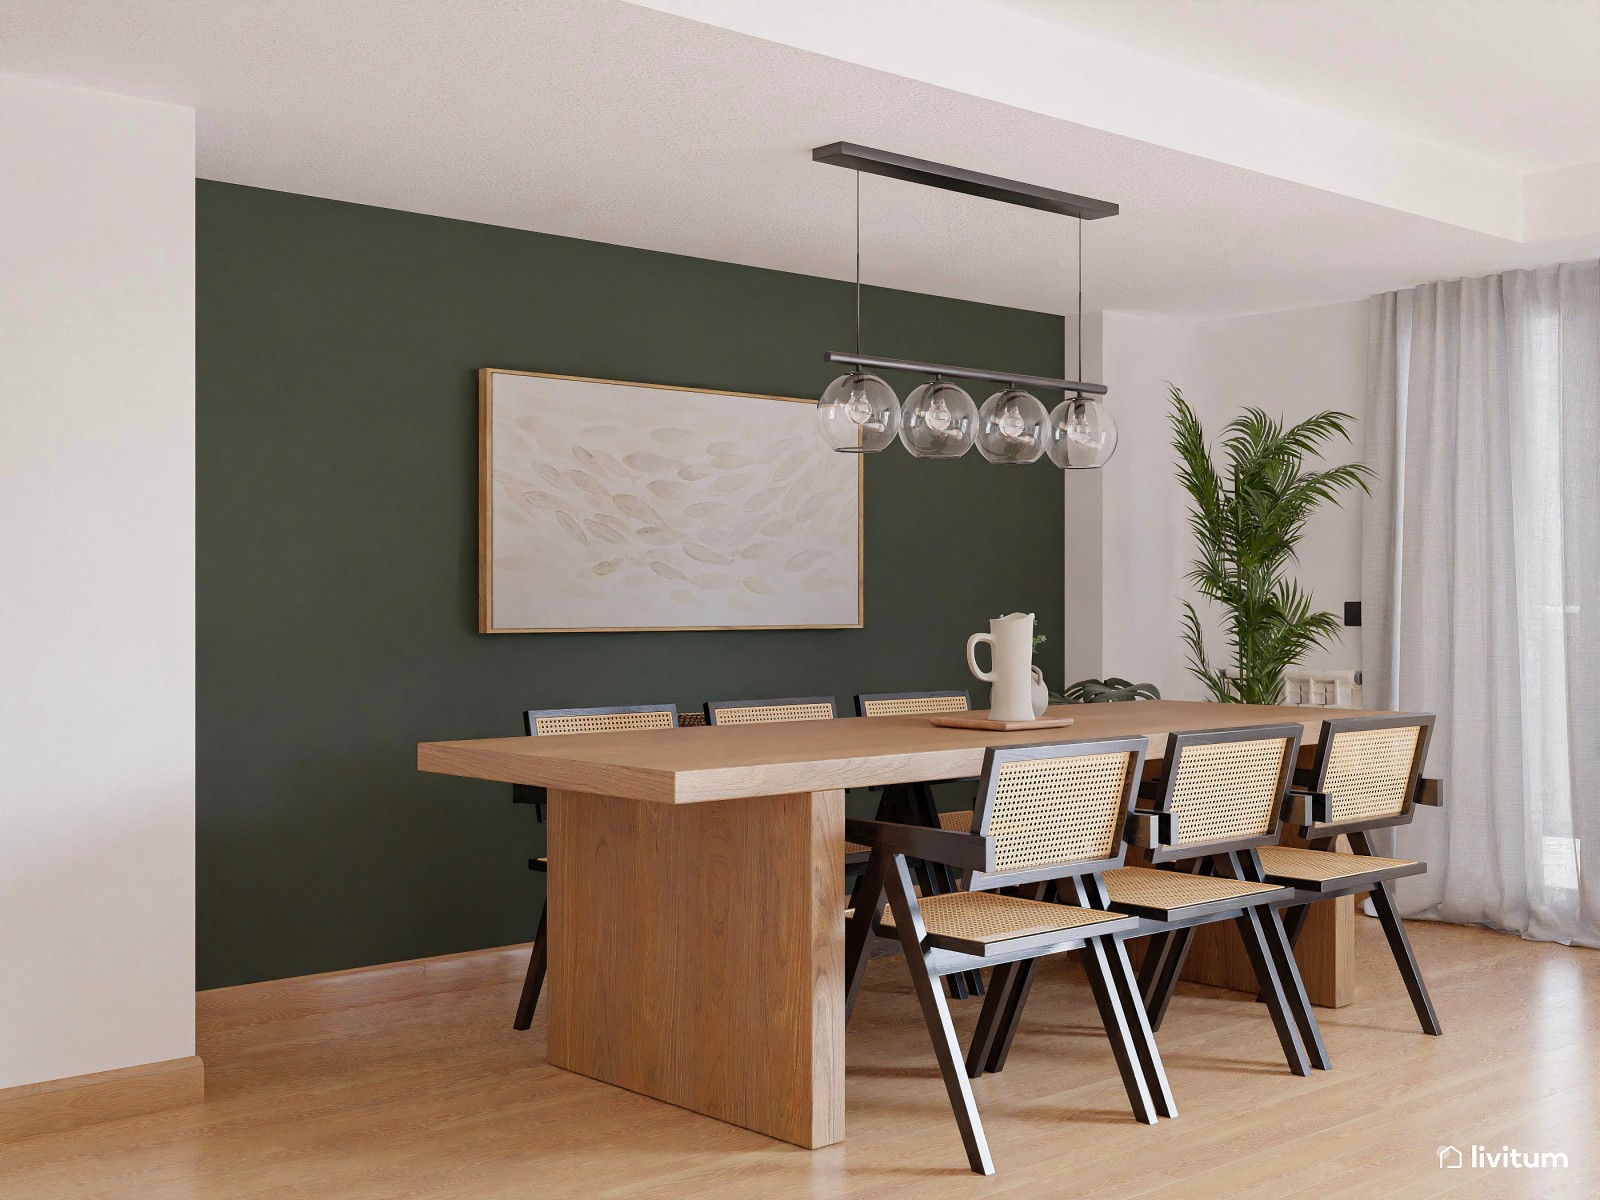 Salón comedor de estilo moderno en madera y verde 